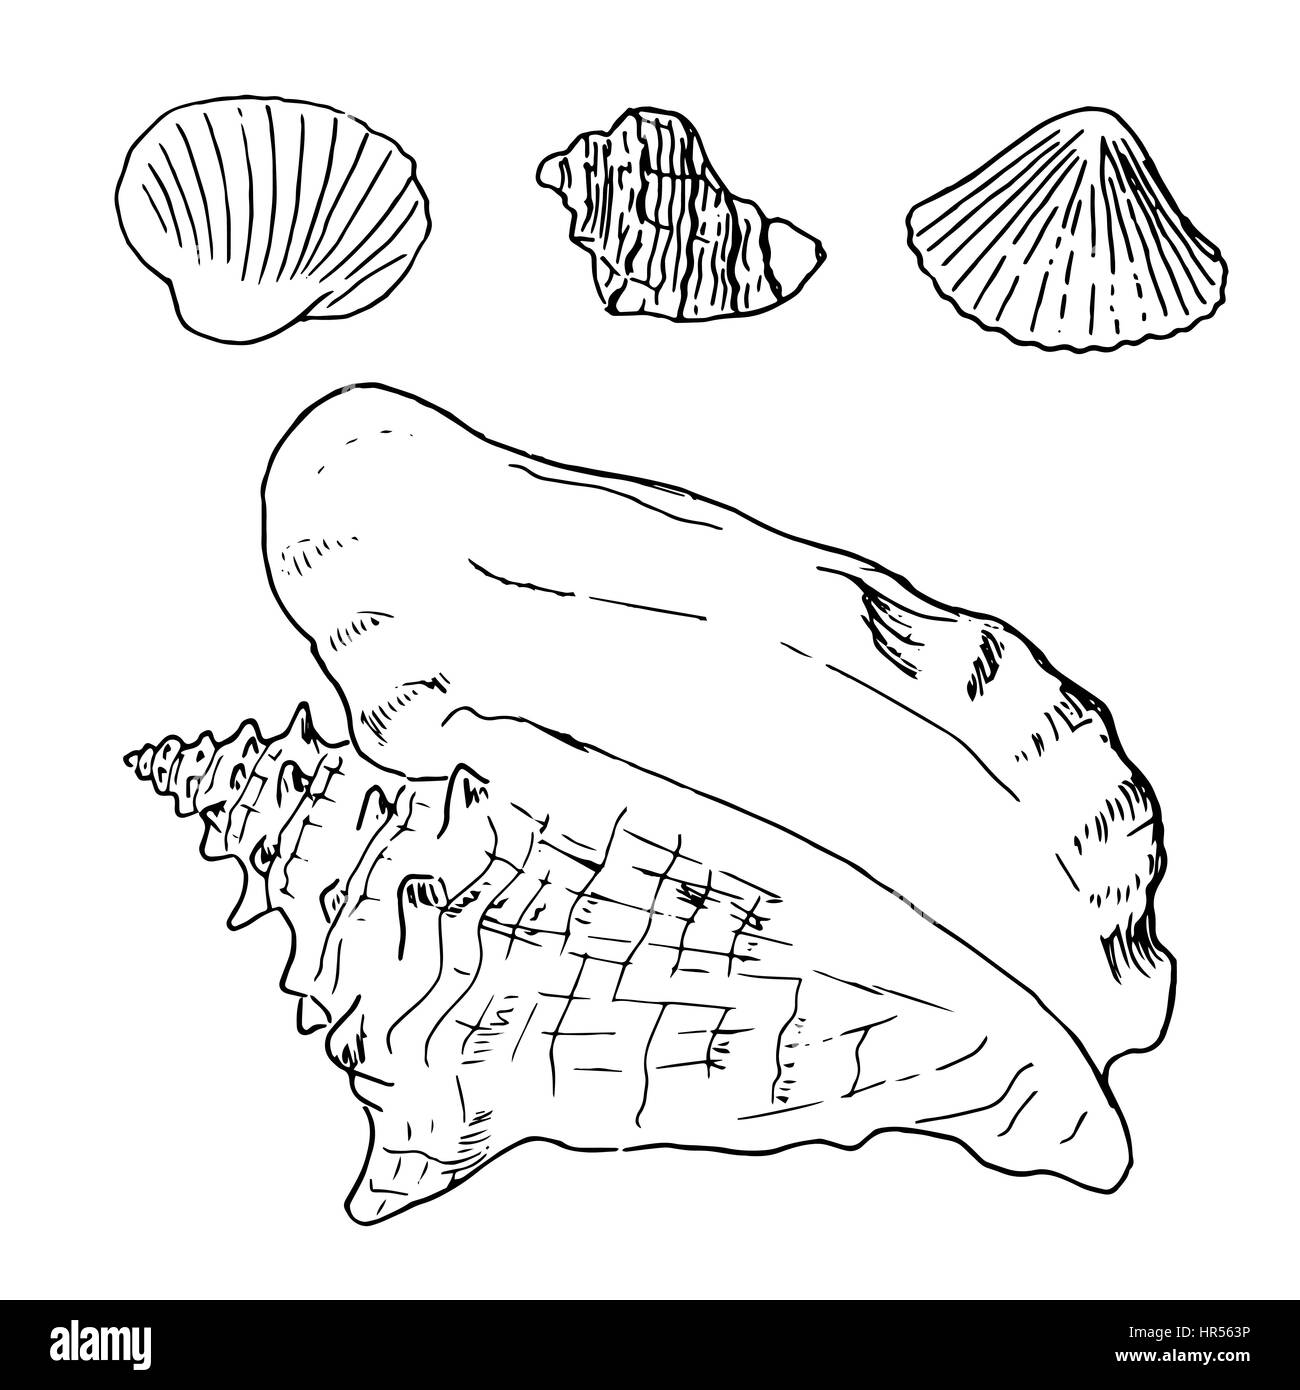 Satz von verschiedenen schönen Meer Muschelschalen, Skizze Abbildung. isoliert. Realistische handgezeichnete Skizzen von Muscheln. Ozean-Fauna. aquatische. Rapana, Stock Vektor